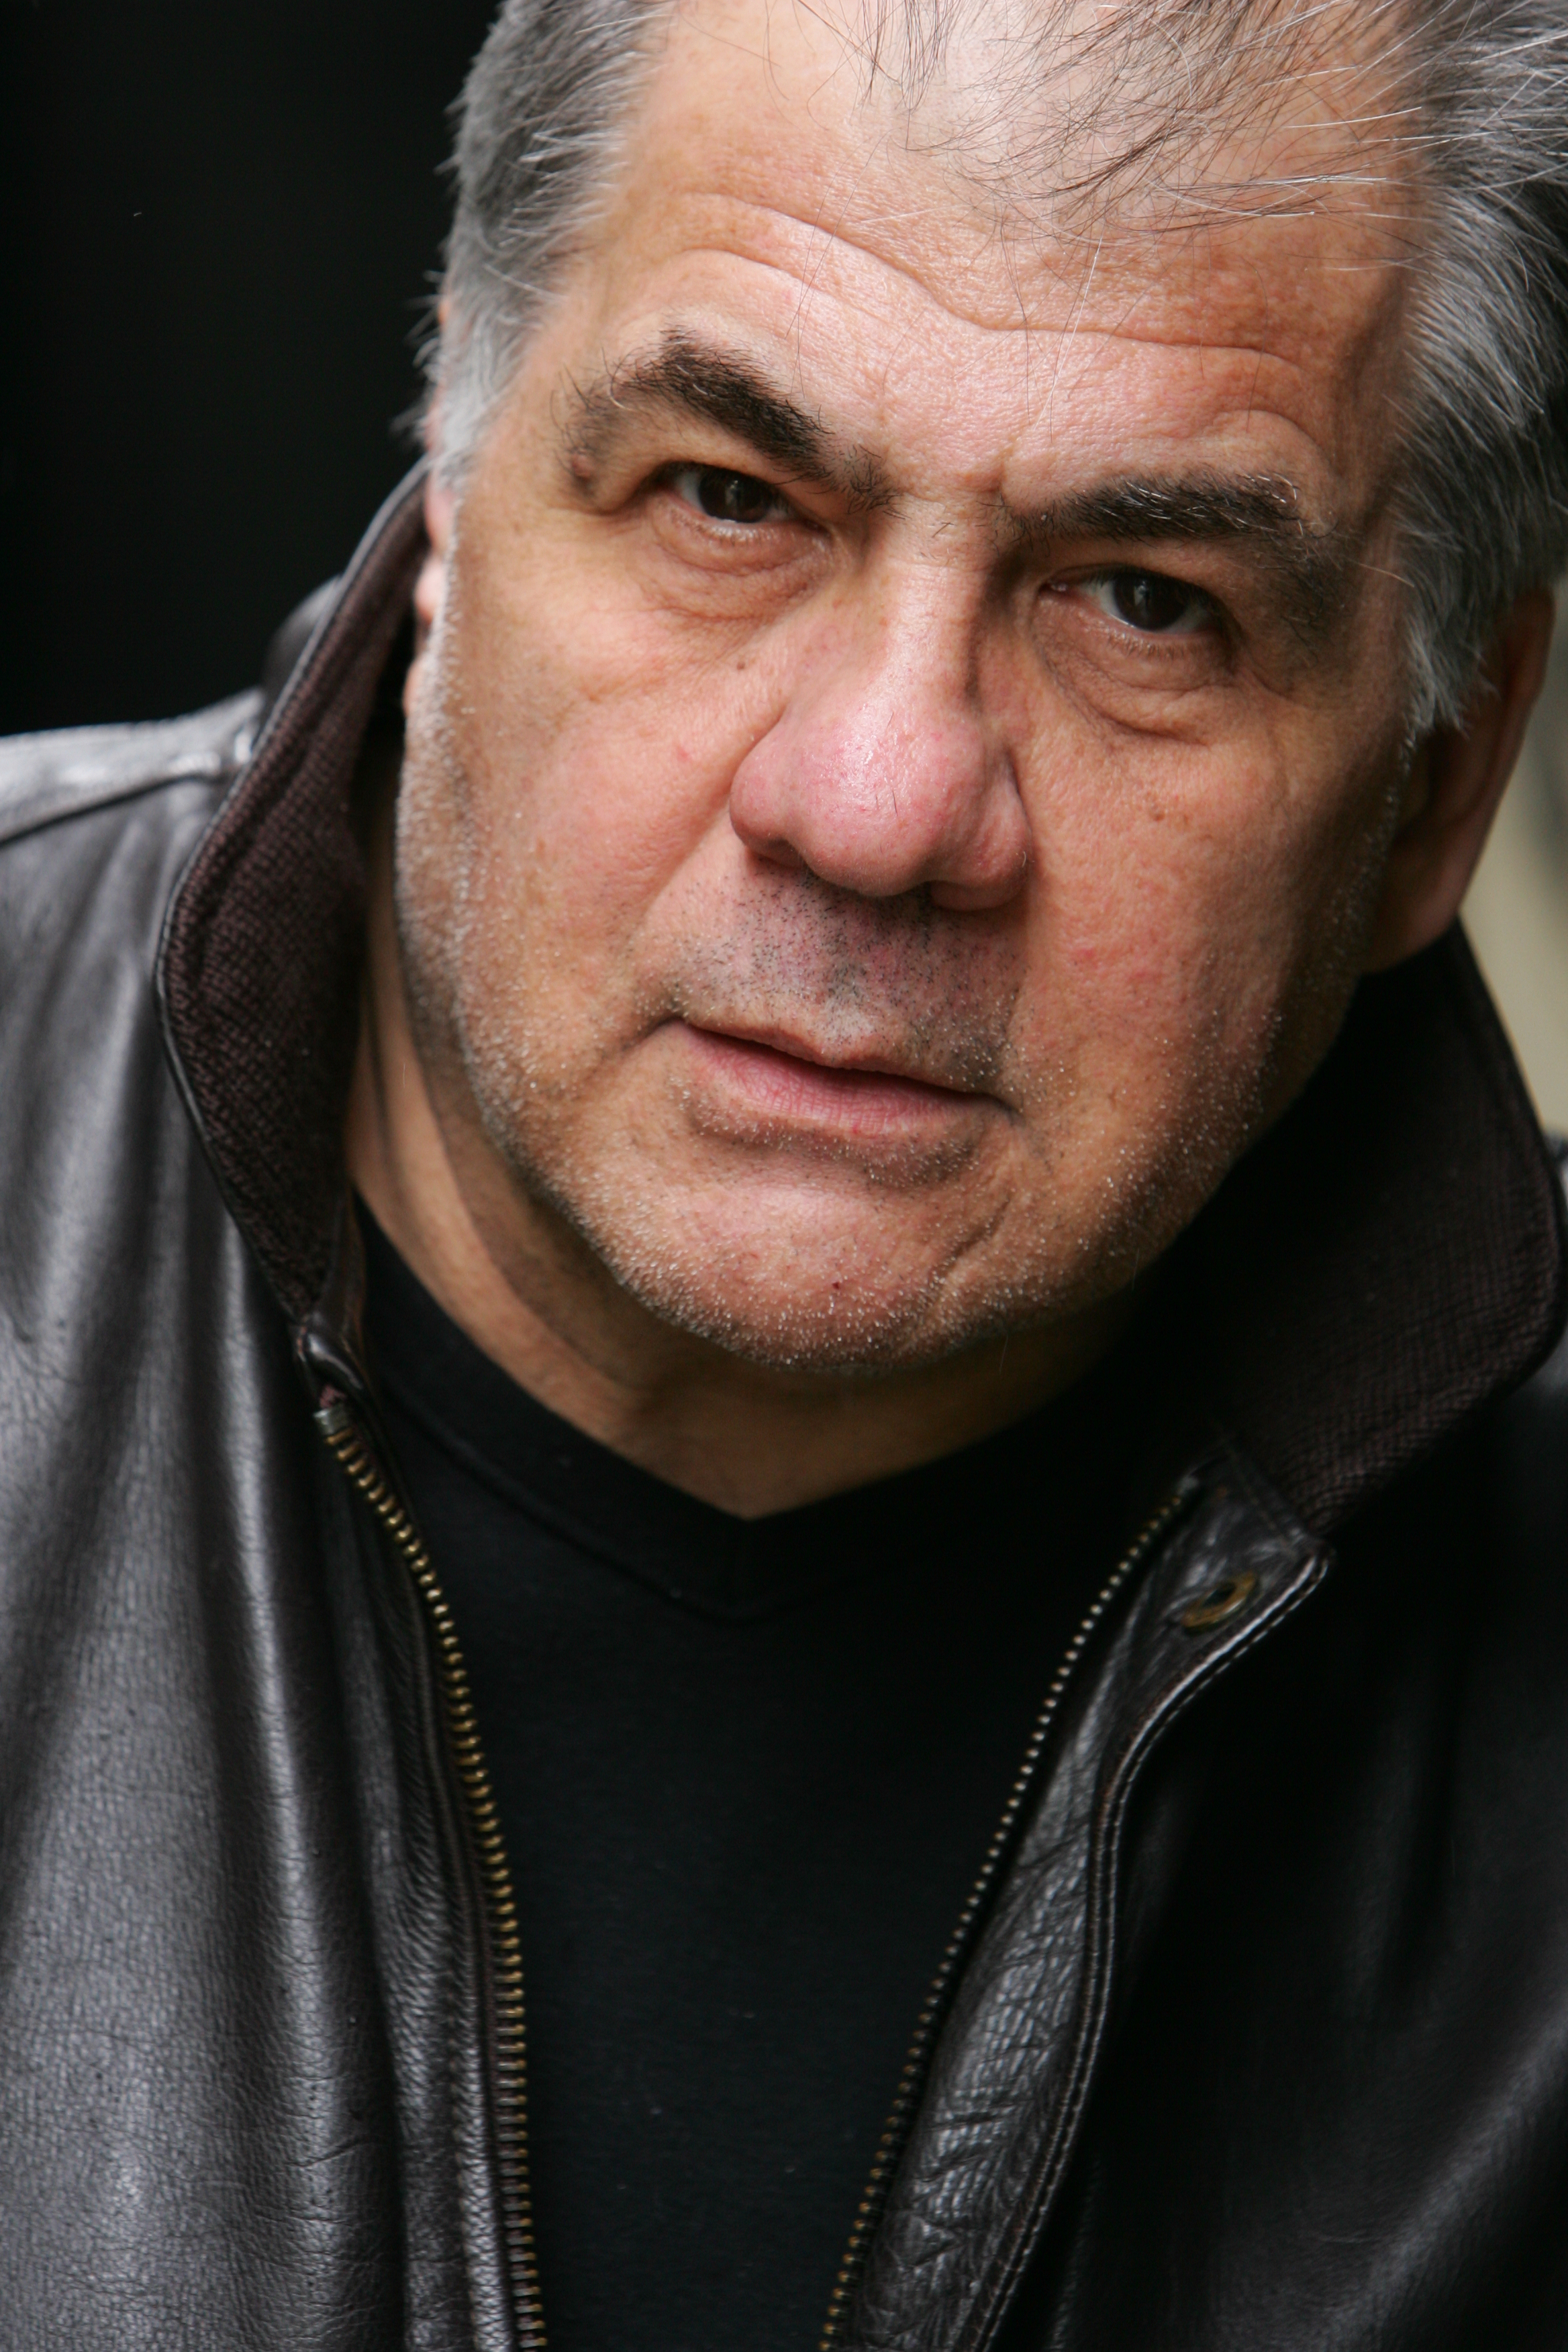 Michael Tezcan